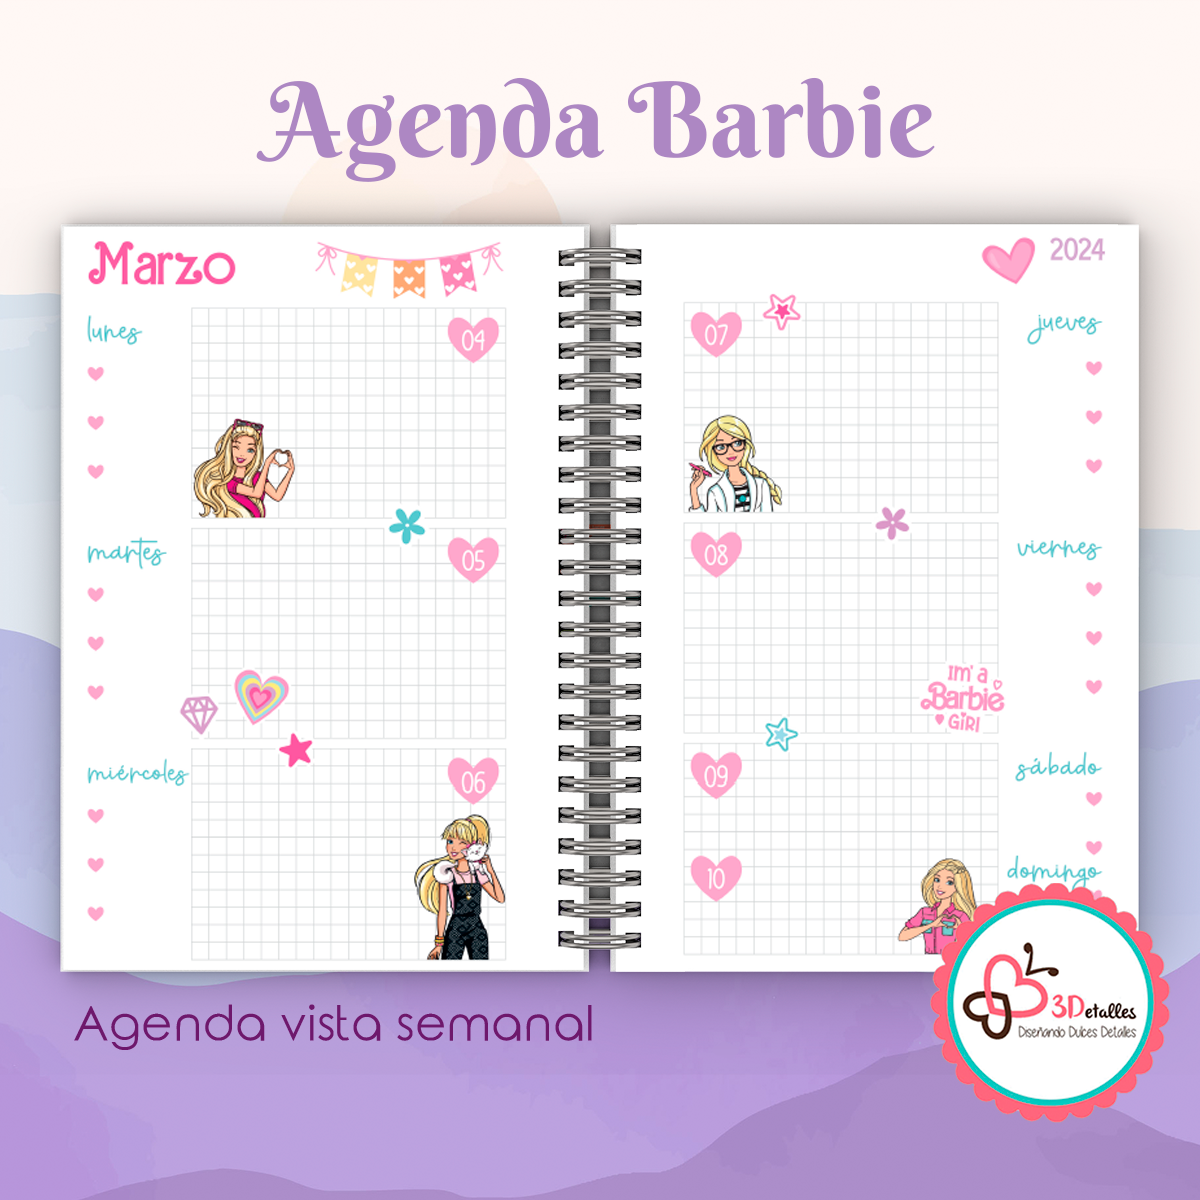 Agenda Barbie 2024